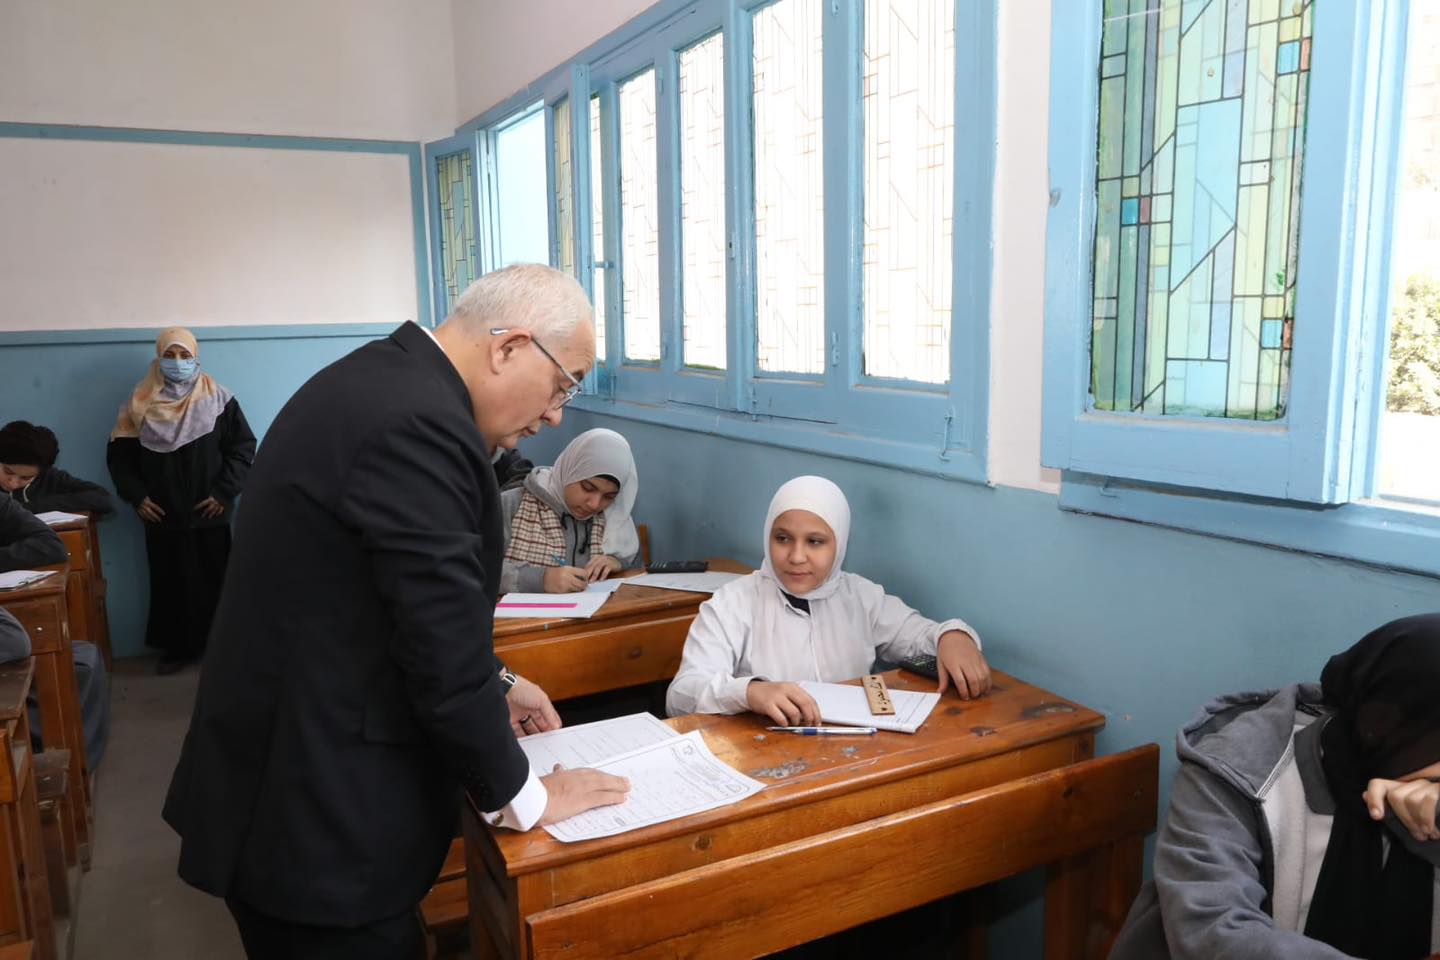 وزير التعليم يتفقد لجان امتحانات الشهادة الإعدادية بالجيزة (صور)